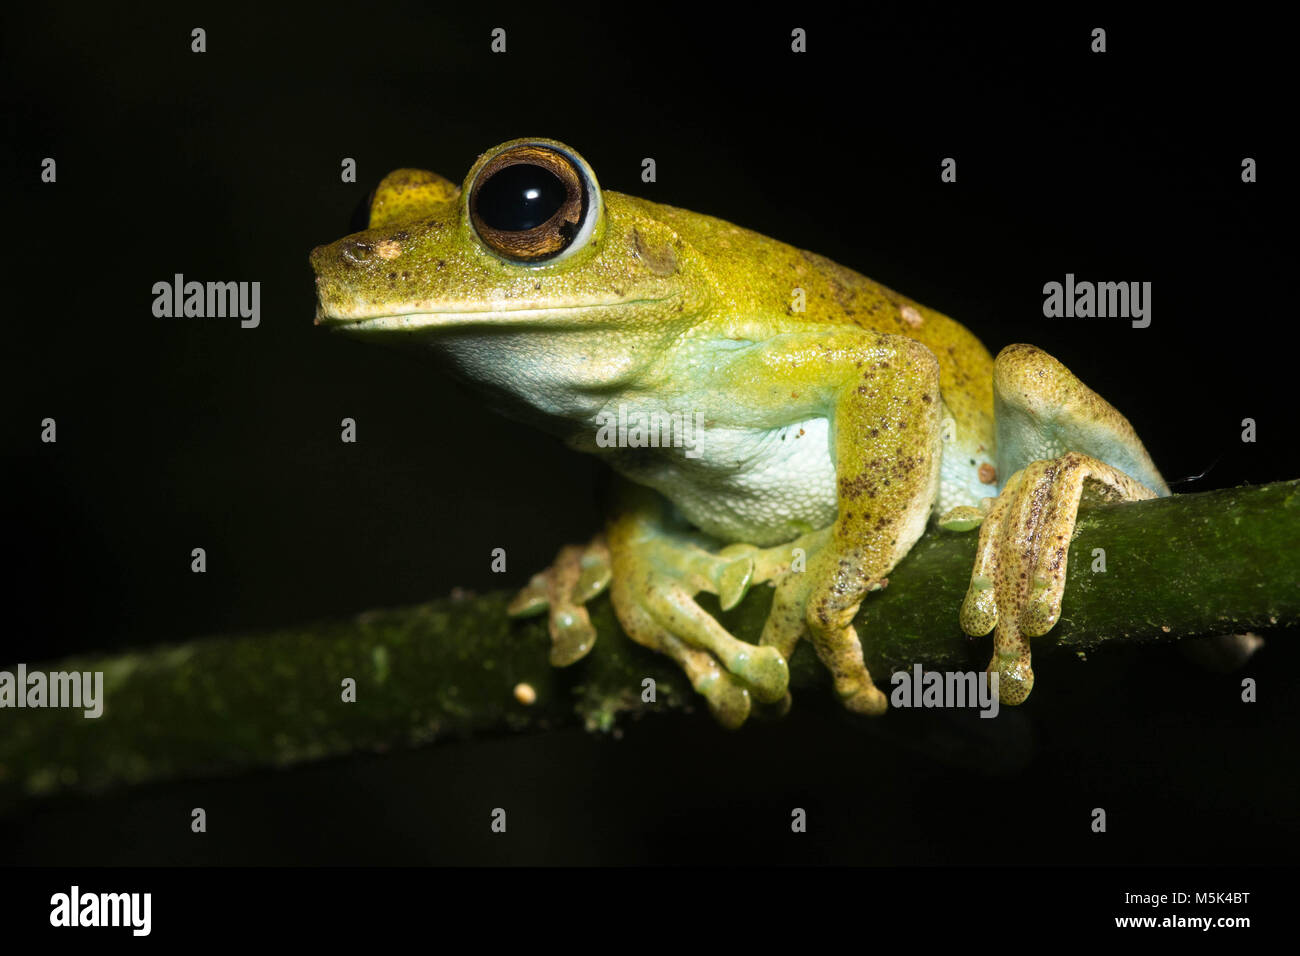 A tree frog (Hypsiboas sp) from Southern Ecuador. Stock Photo